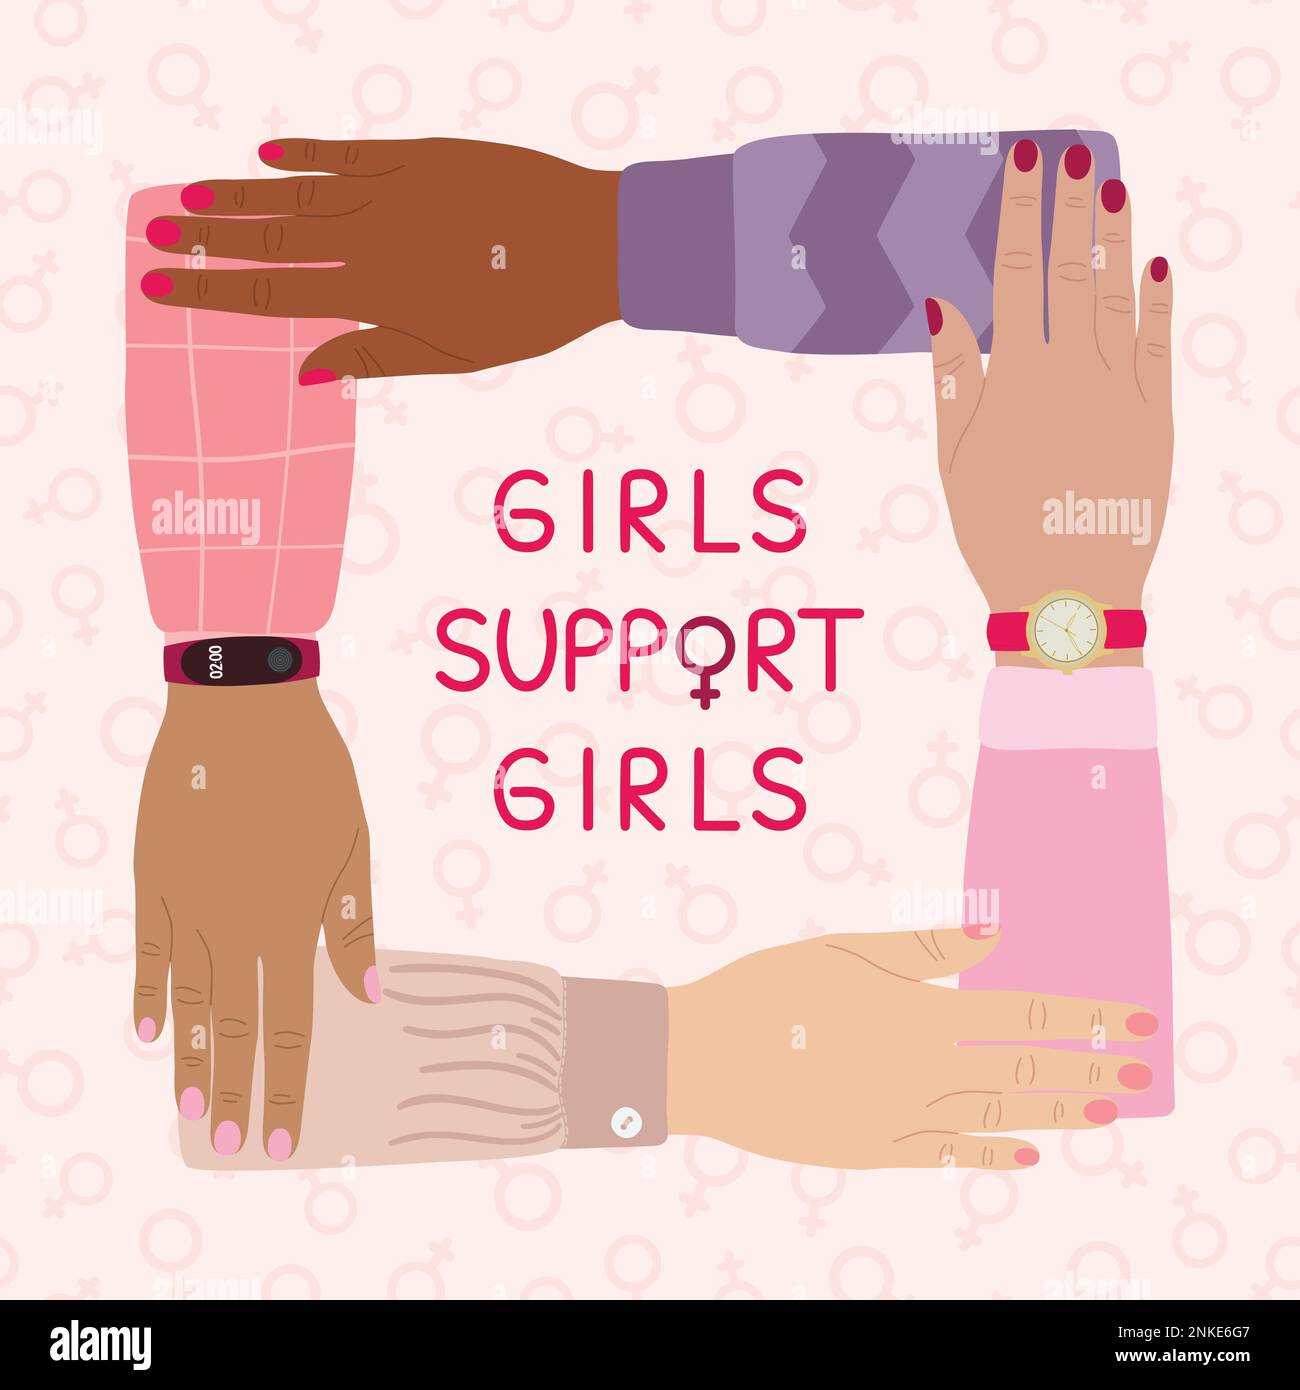 Mädchen unterstützen Mädchen Poster. Weibliche Hände stapeln sich. Frauenförderung, Frauenmacht, Kampf für die Gleichstellung der Geschlechter, Feminismus und Schwesternschaft. Stock Vektor